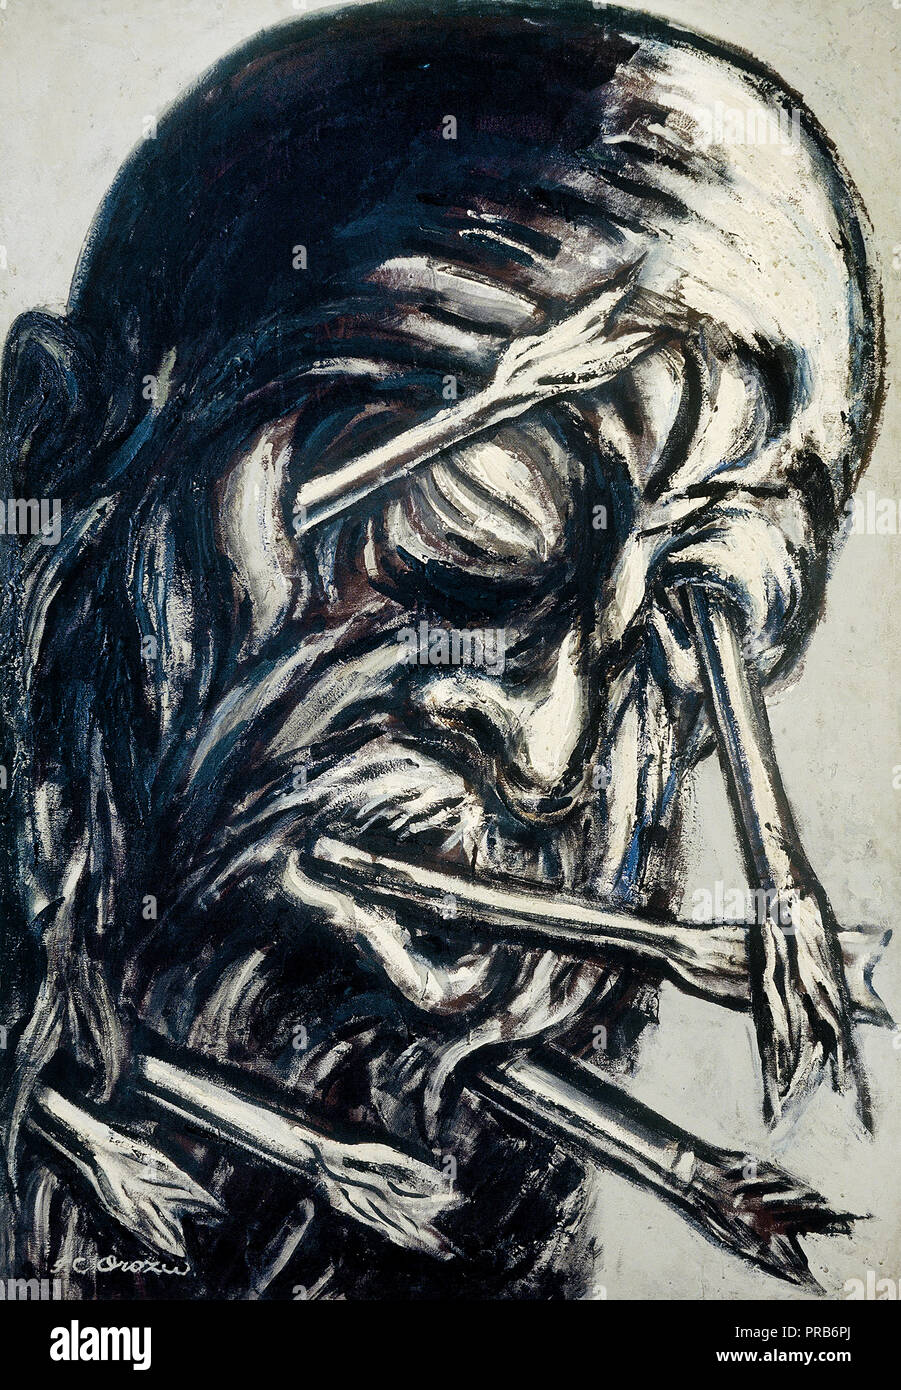 Jose Clemente Orozco, chef percé de flèches, de la série Los Teules 1947 Pyroxylin sur masonite, Museo Nacional de Arte, Mexico, Mexique. Banque D'Images